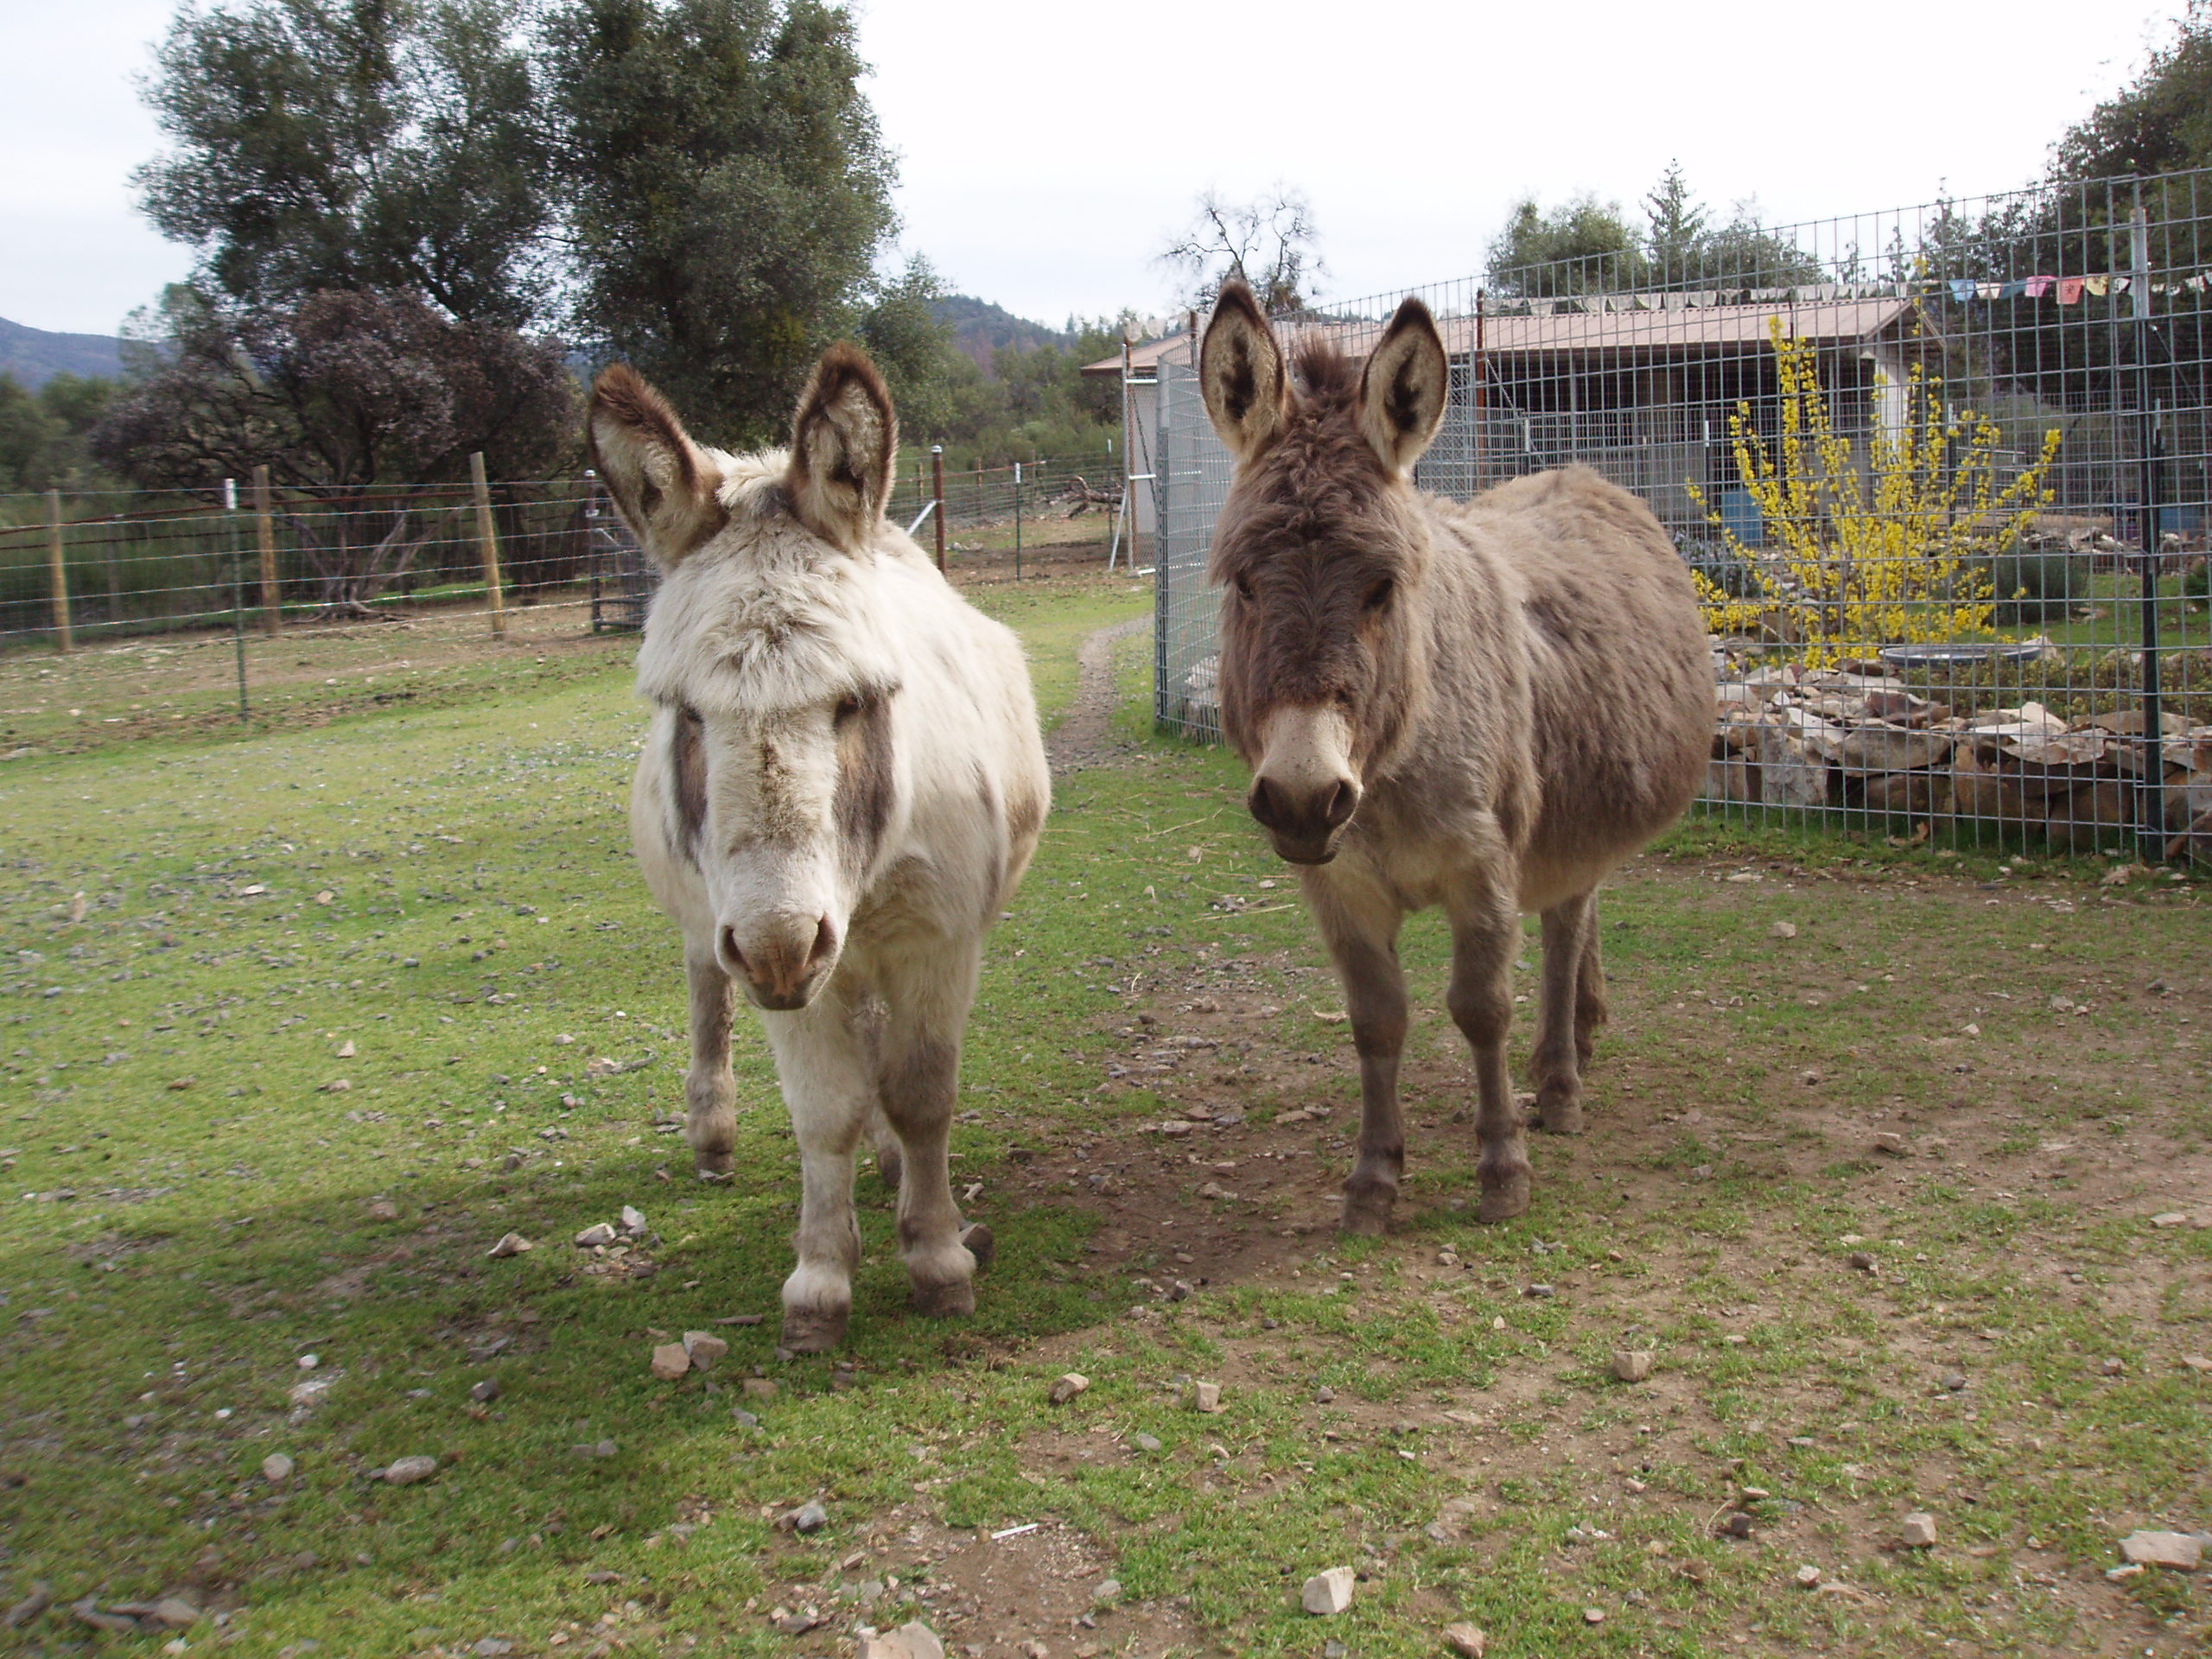 Ferdinand and Lily mini donkeys